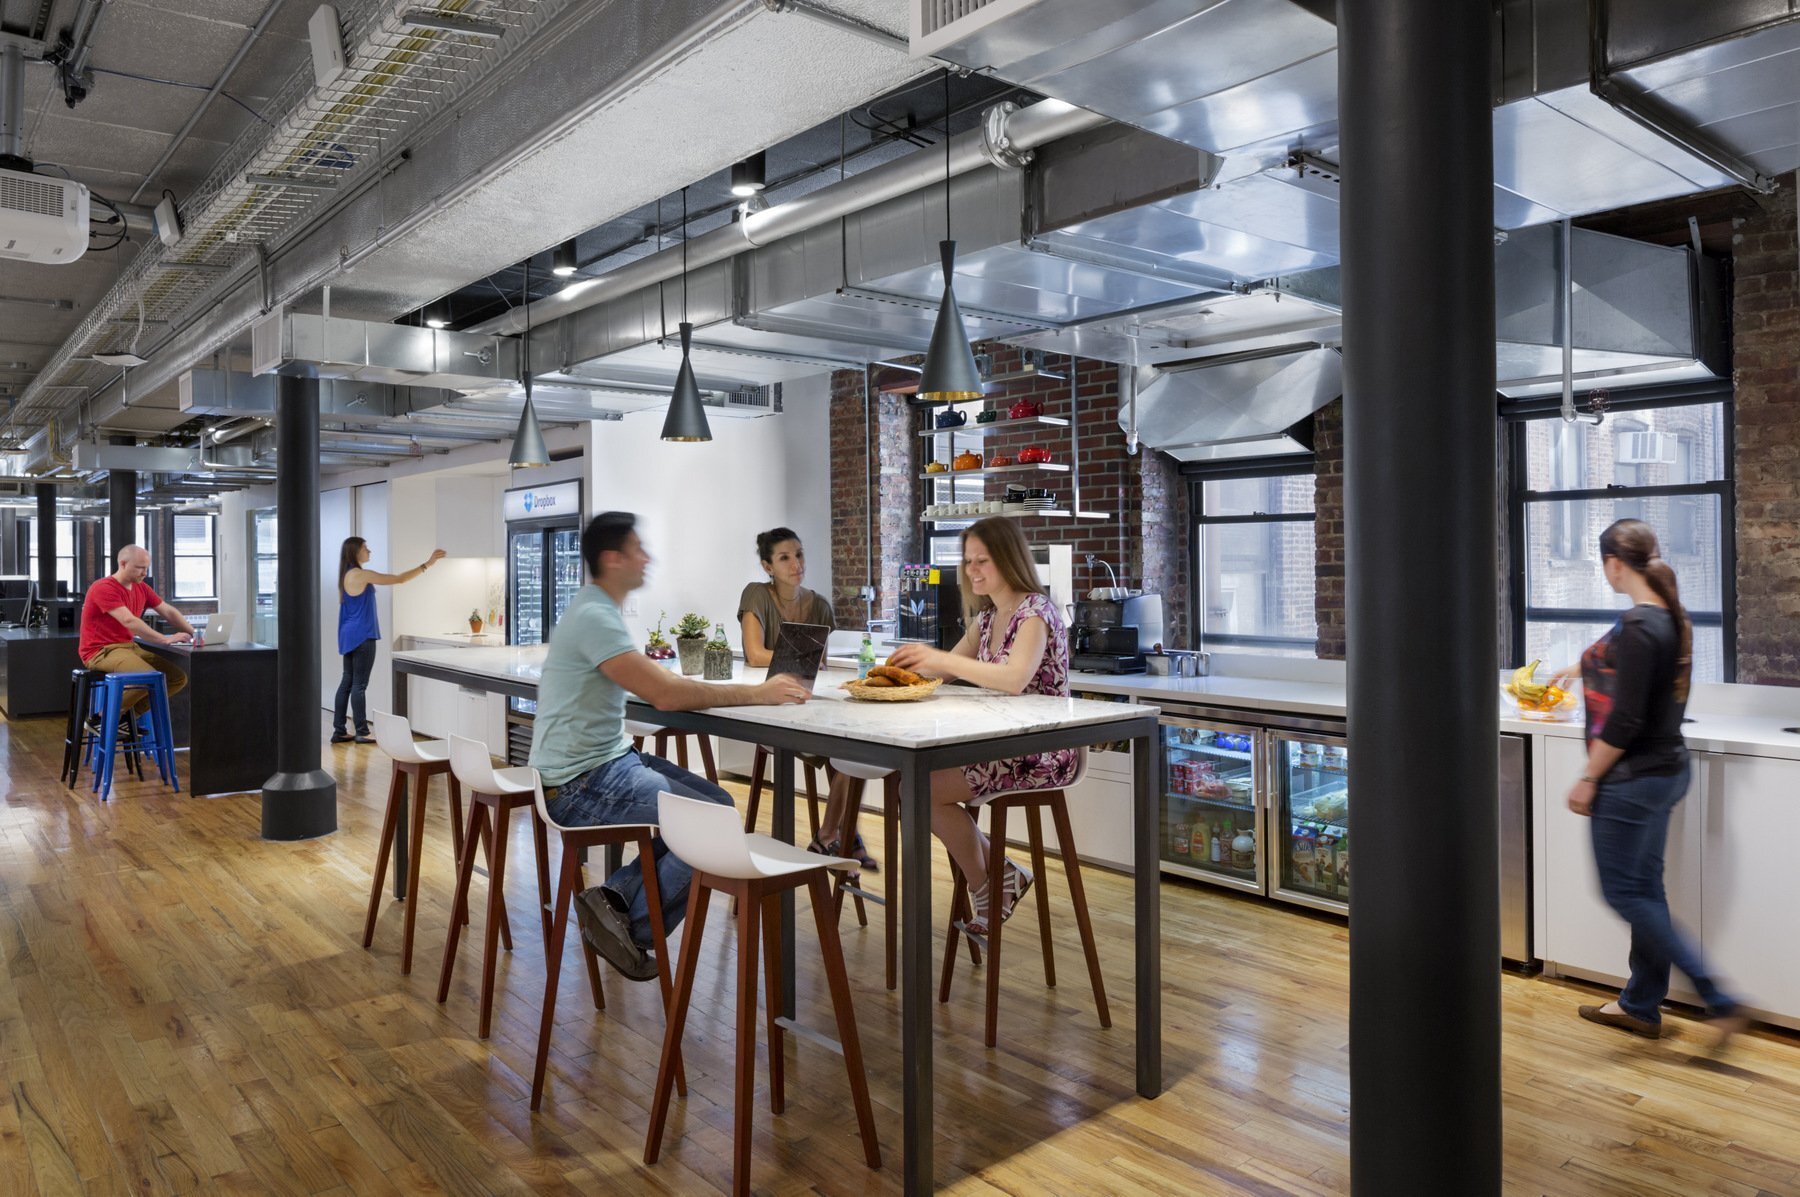 工作室辦公室設計裝修,以加強現有建筑空間的功能來創建一個真實的,曼哈頓的審美